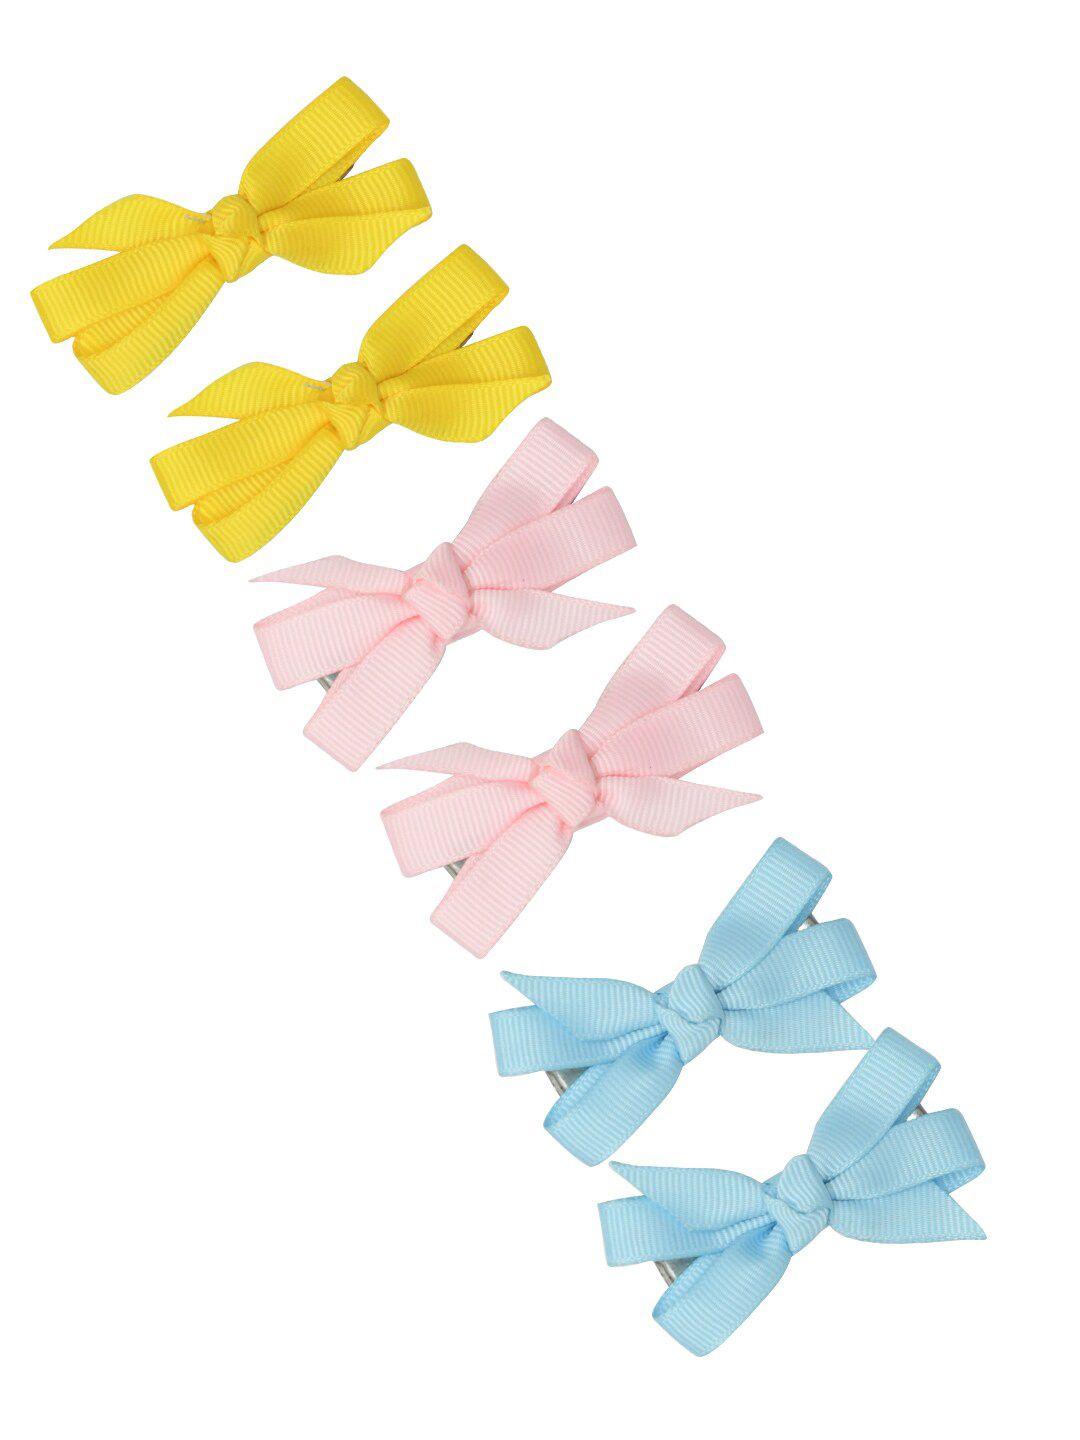 funkrafts girls yellow & pink set of 6 alligator hair clip